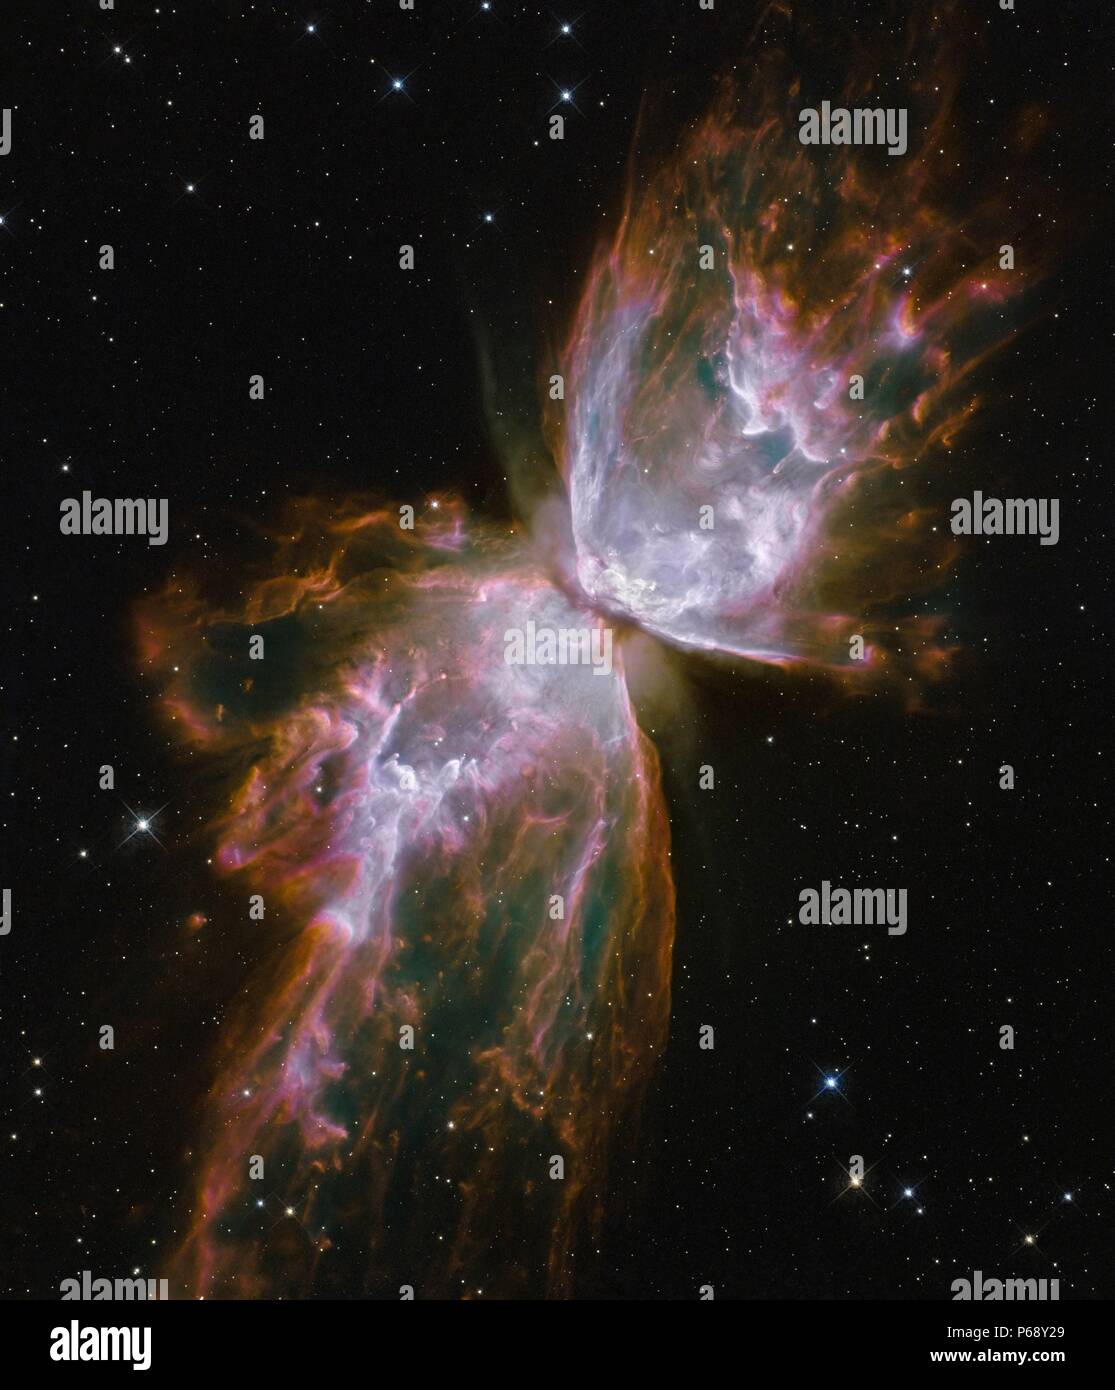 Forme papillon émerge de l'effondrement stellaire dans NGC 6302 nébuleuse planétaire. Photo prise par le télescope Hubble. Datée 2009 Banque D'Images